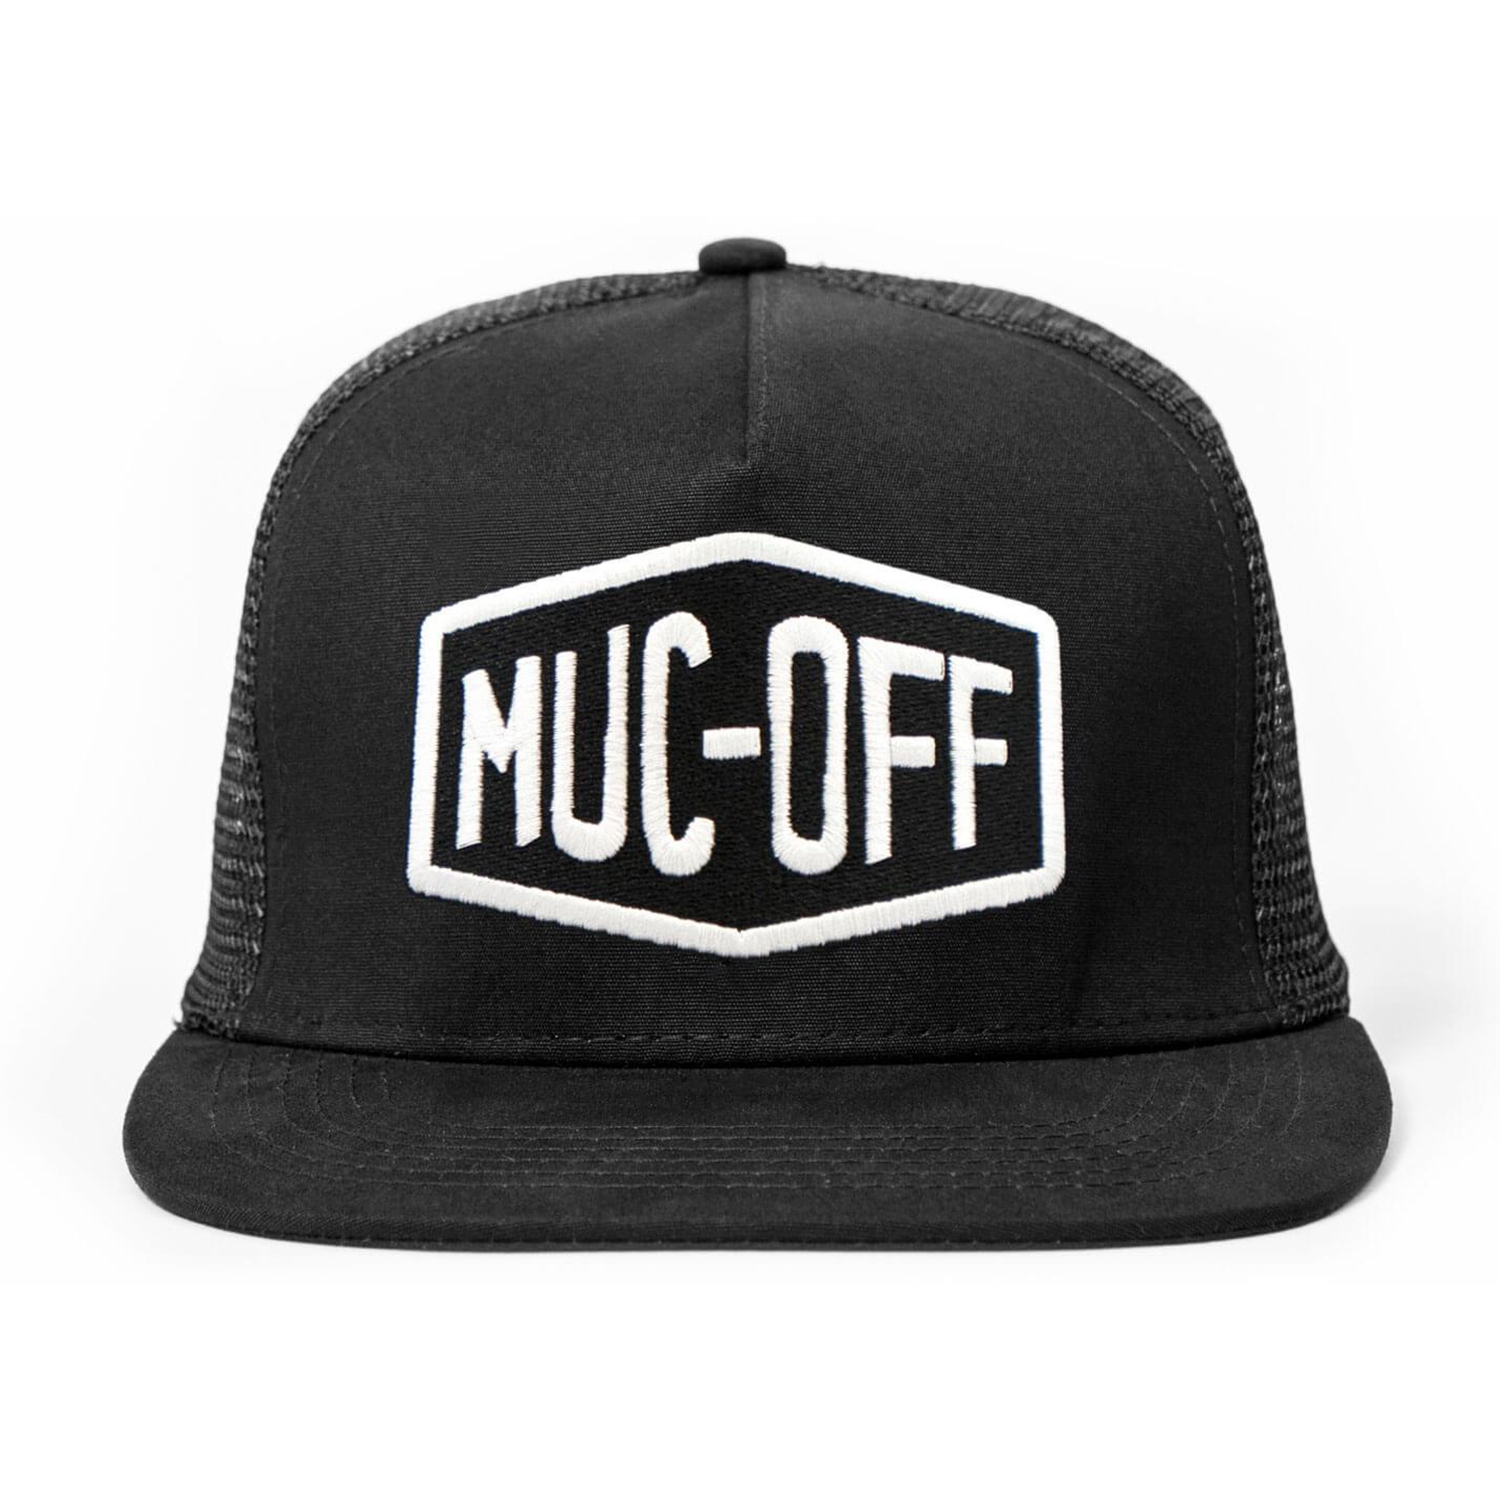 Produktbild von Muc-Off Works Mesh Back Trucker Cap - schwarz